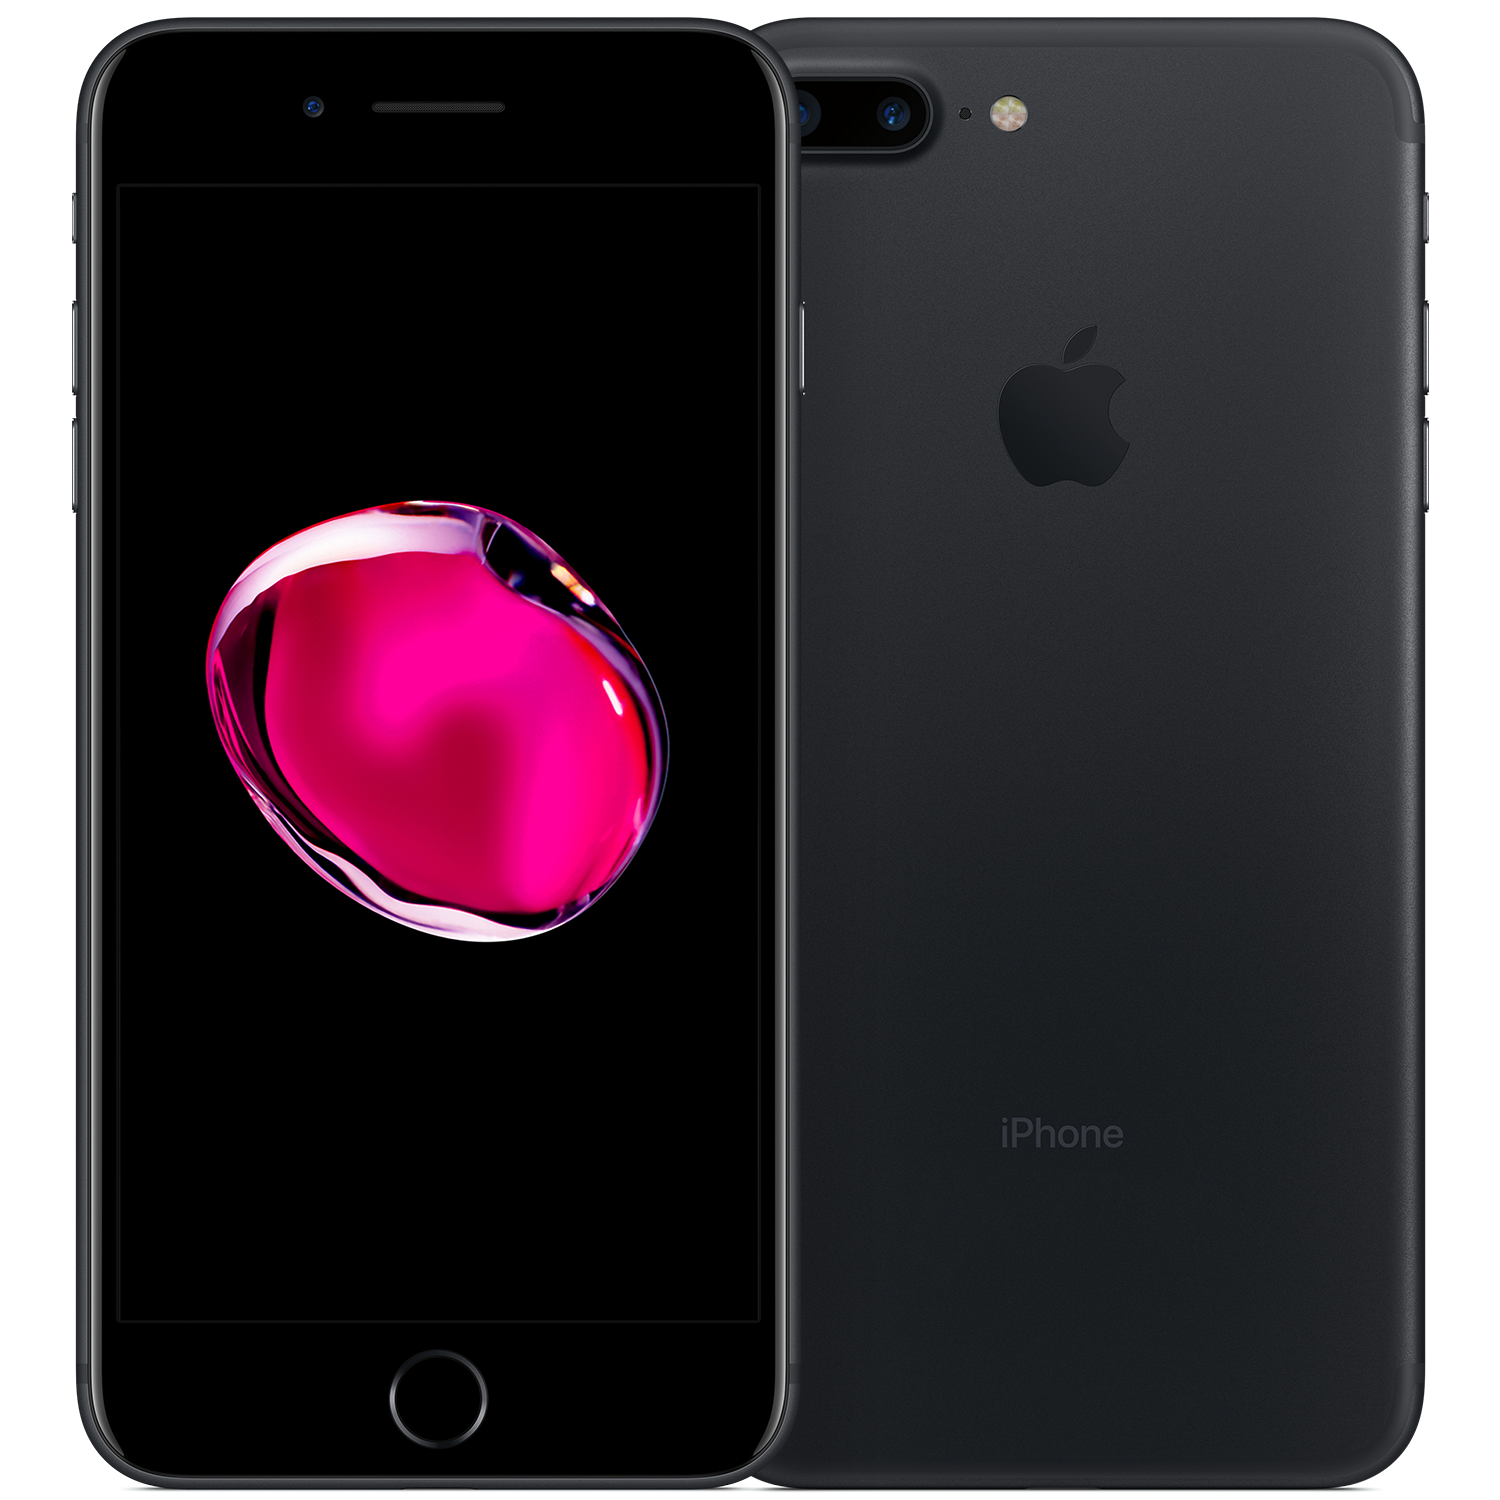 Toevallig voetstuk rand Refurbished iPhone 7 Plus 32GB zwart kopen? - 2 jaar garantie! |  FixjeiPhone.nl